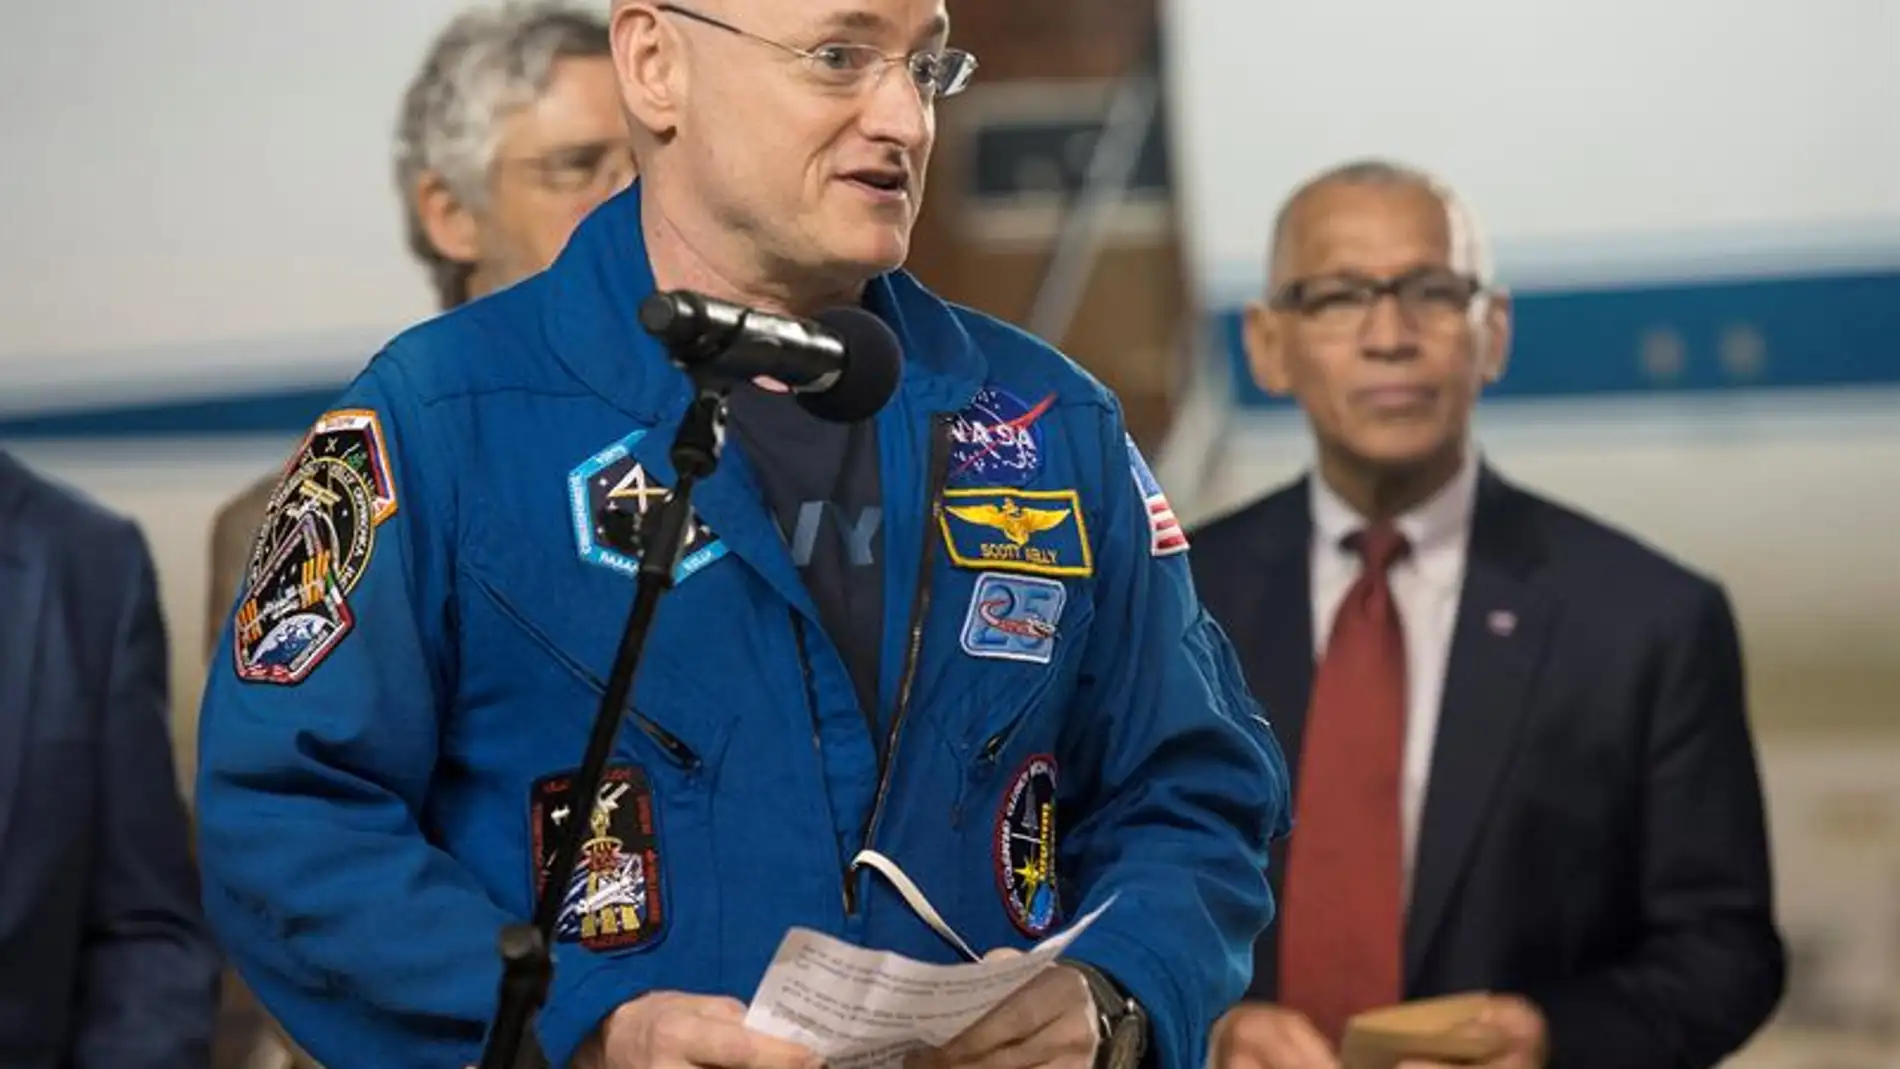 El astronauta Scott Kelly deja la NASA tras pasar un año en el espacio